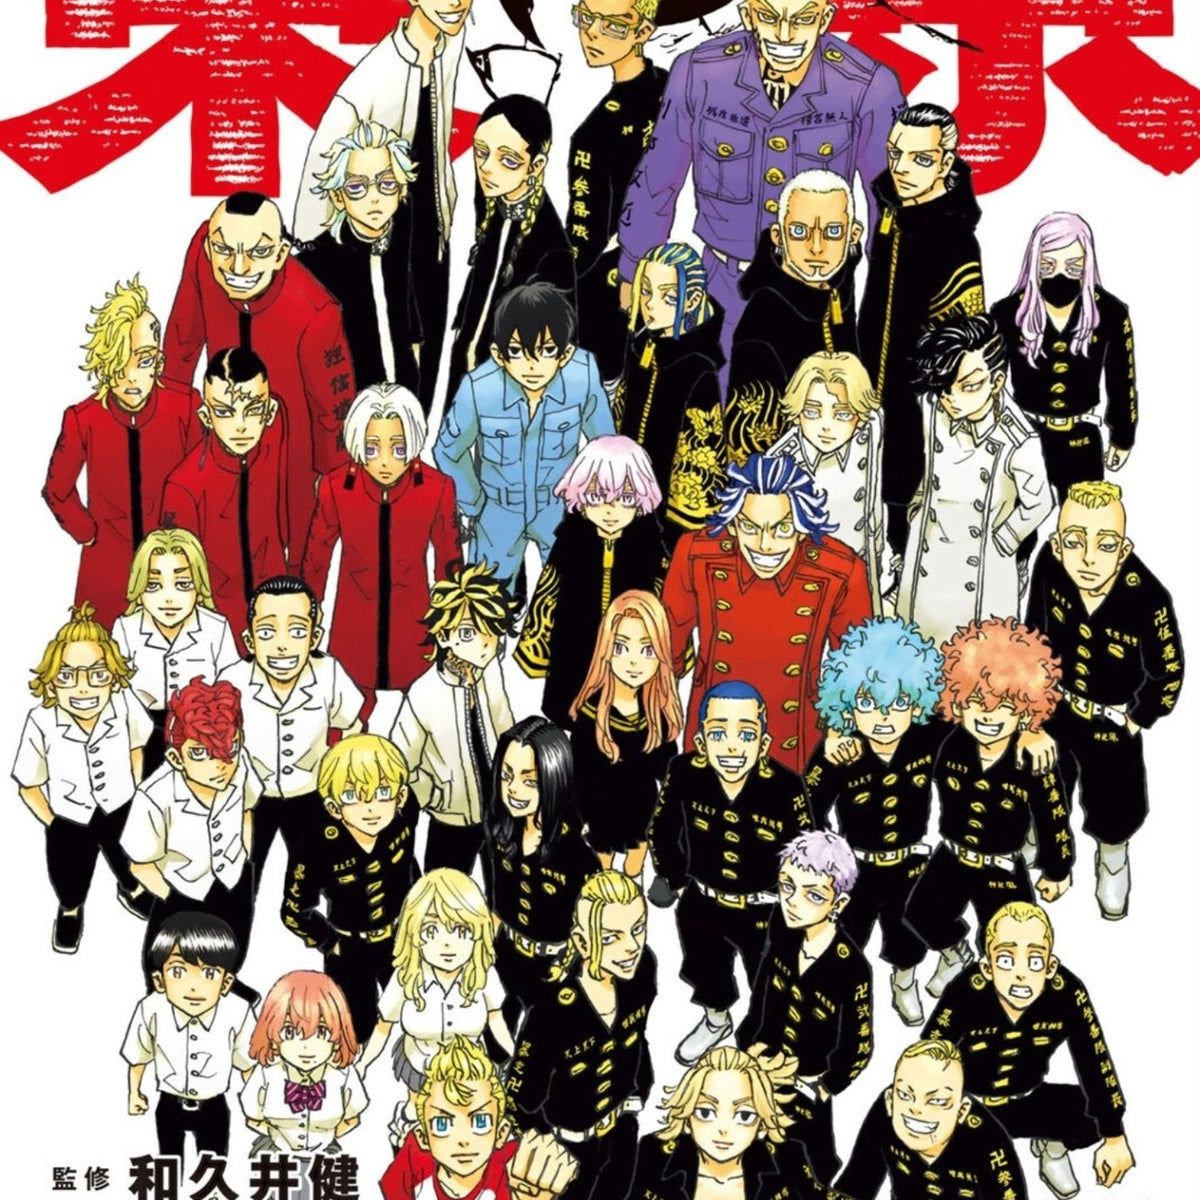 Tokyo Revengers Character Book 3 Tenjiku-hen - Edição Japonesa